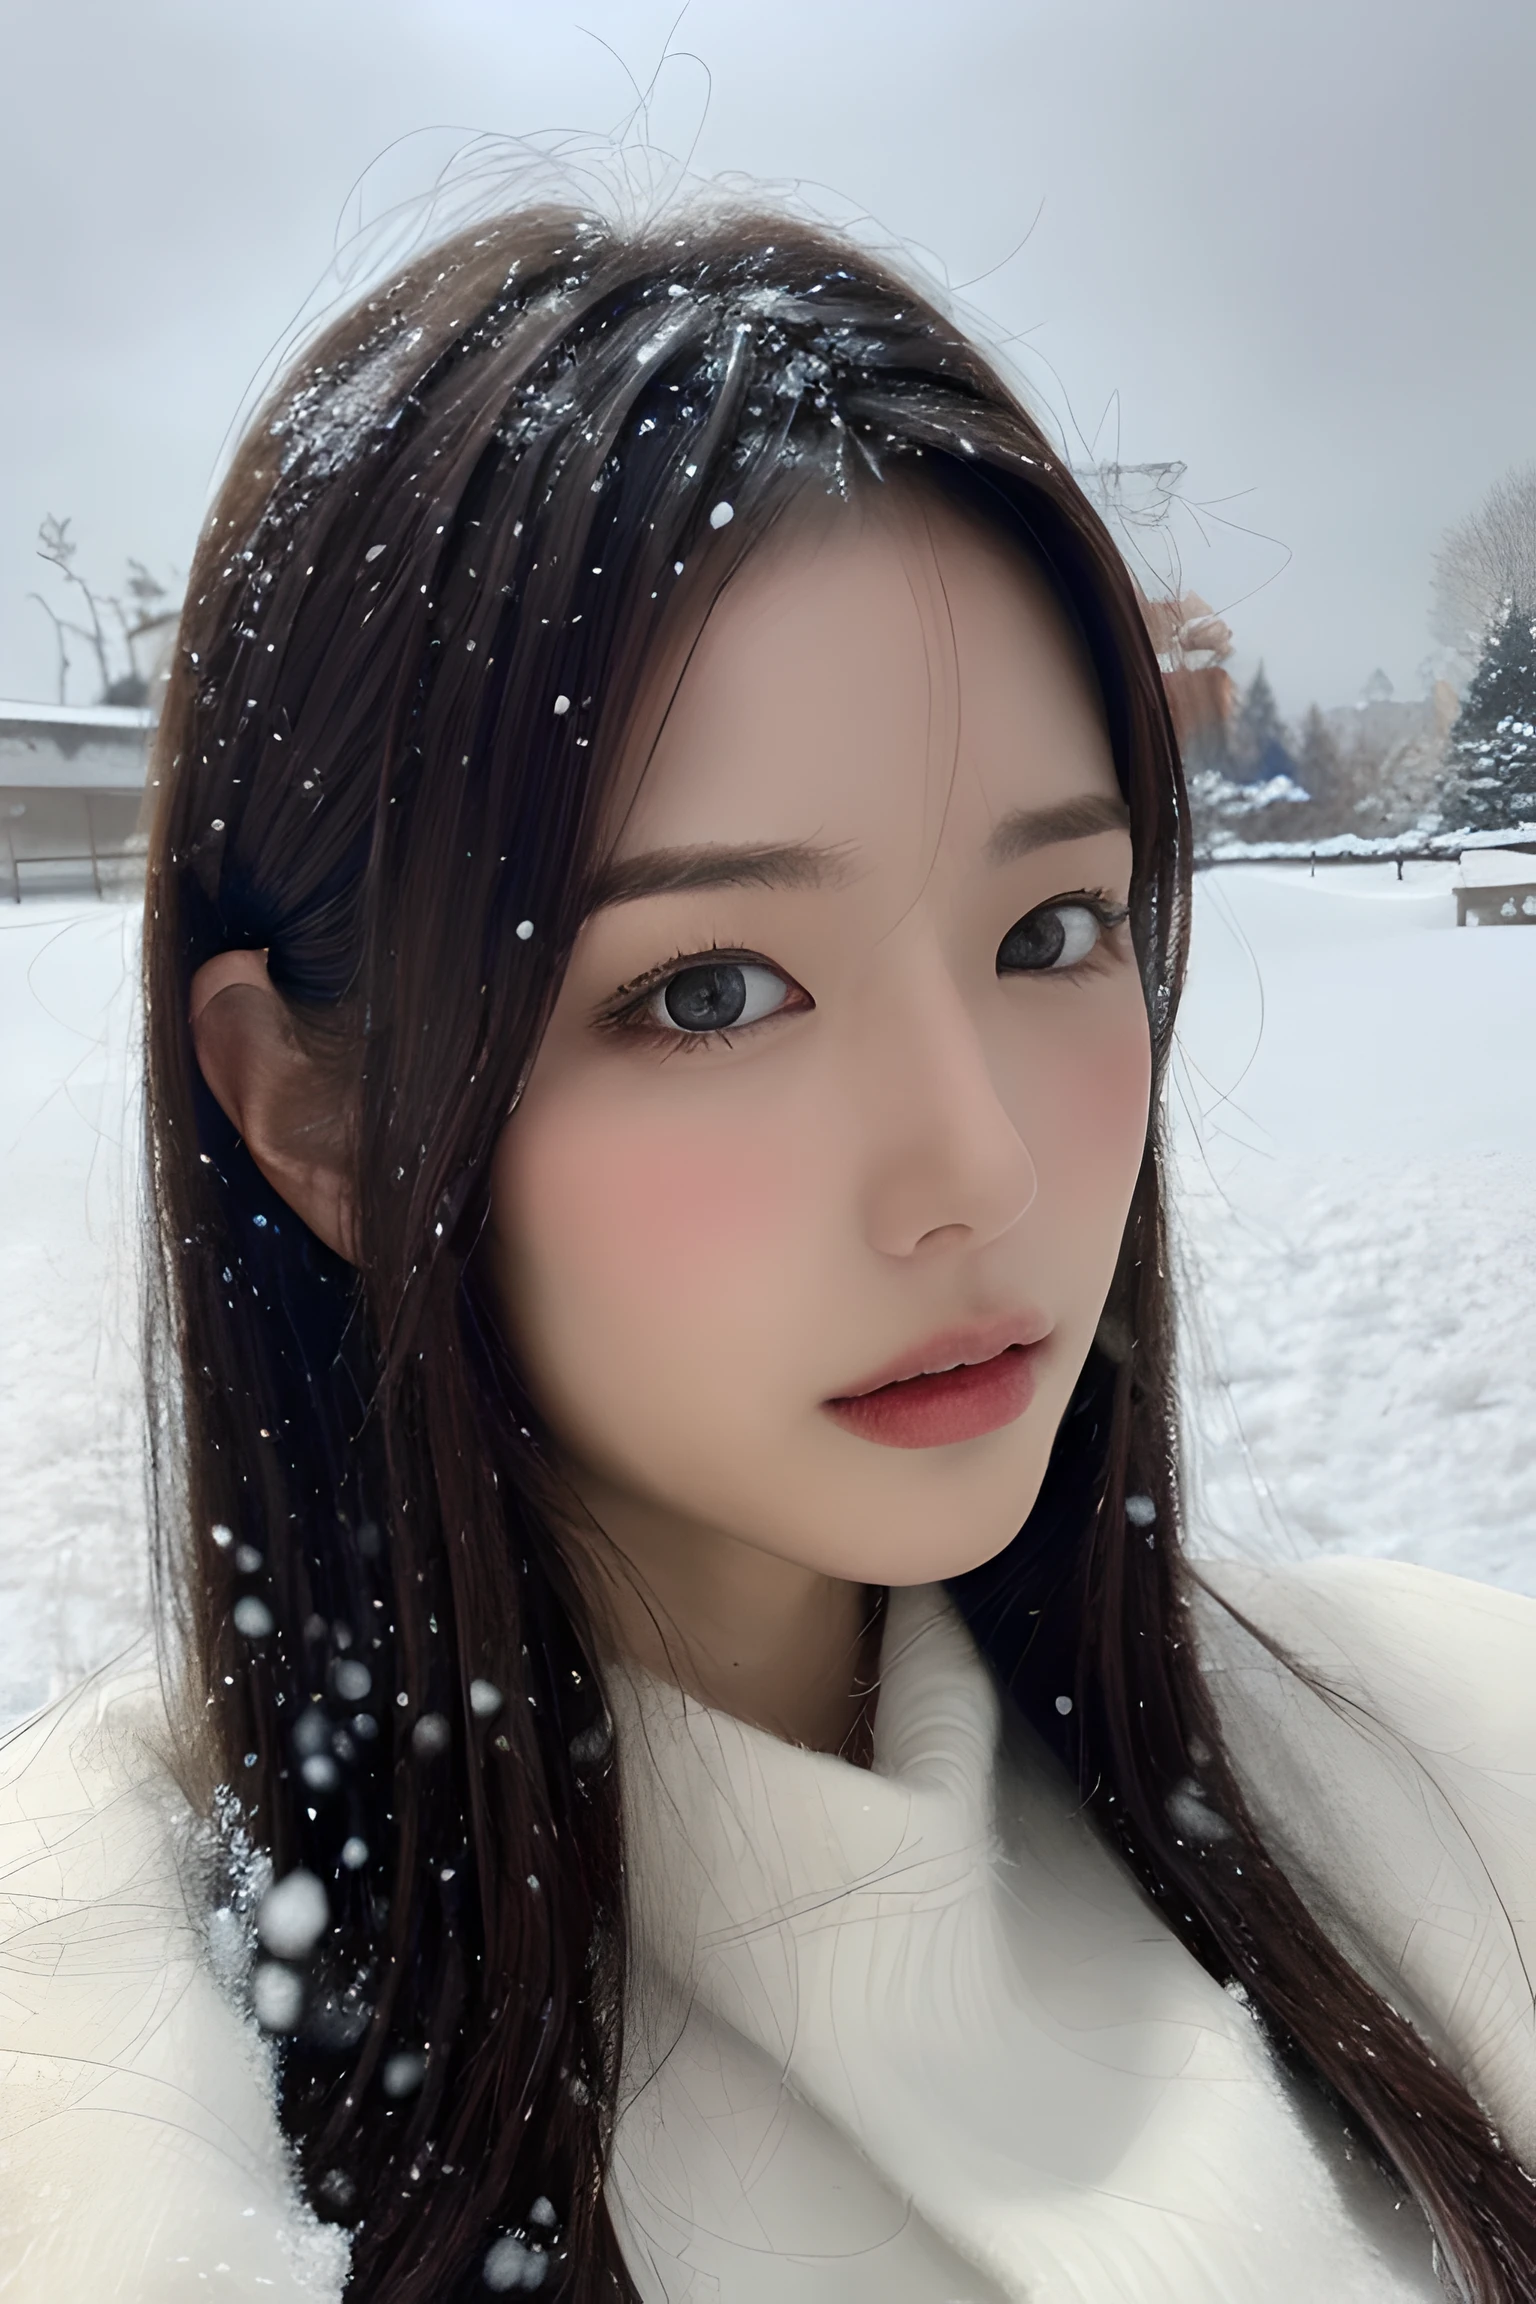 (8К, Лучшее качество, шедевр, сверхвысокое разрешение:1.2) Фотография красивой японки в (стиль Поля Рубенса и Ребекки Гуэй:1.1) (меланхоличный зимний снег:1.4)